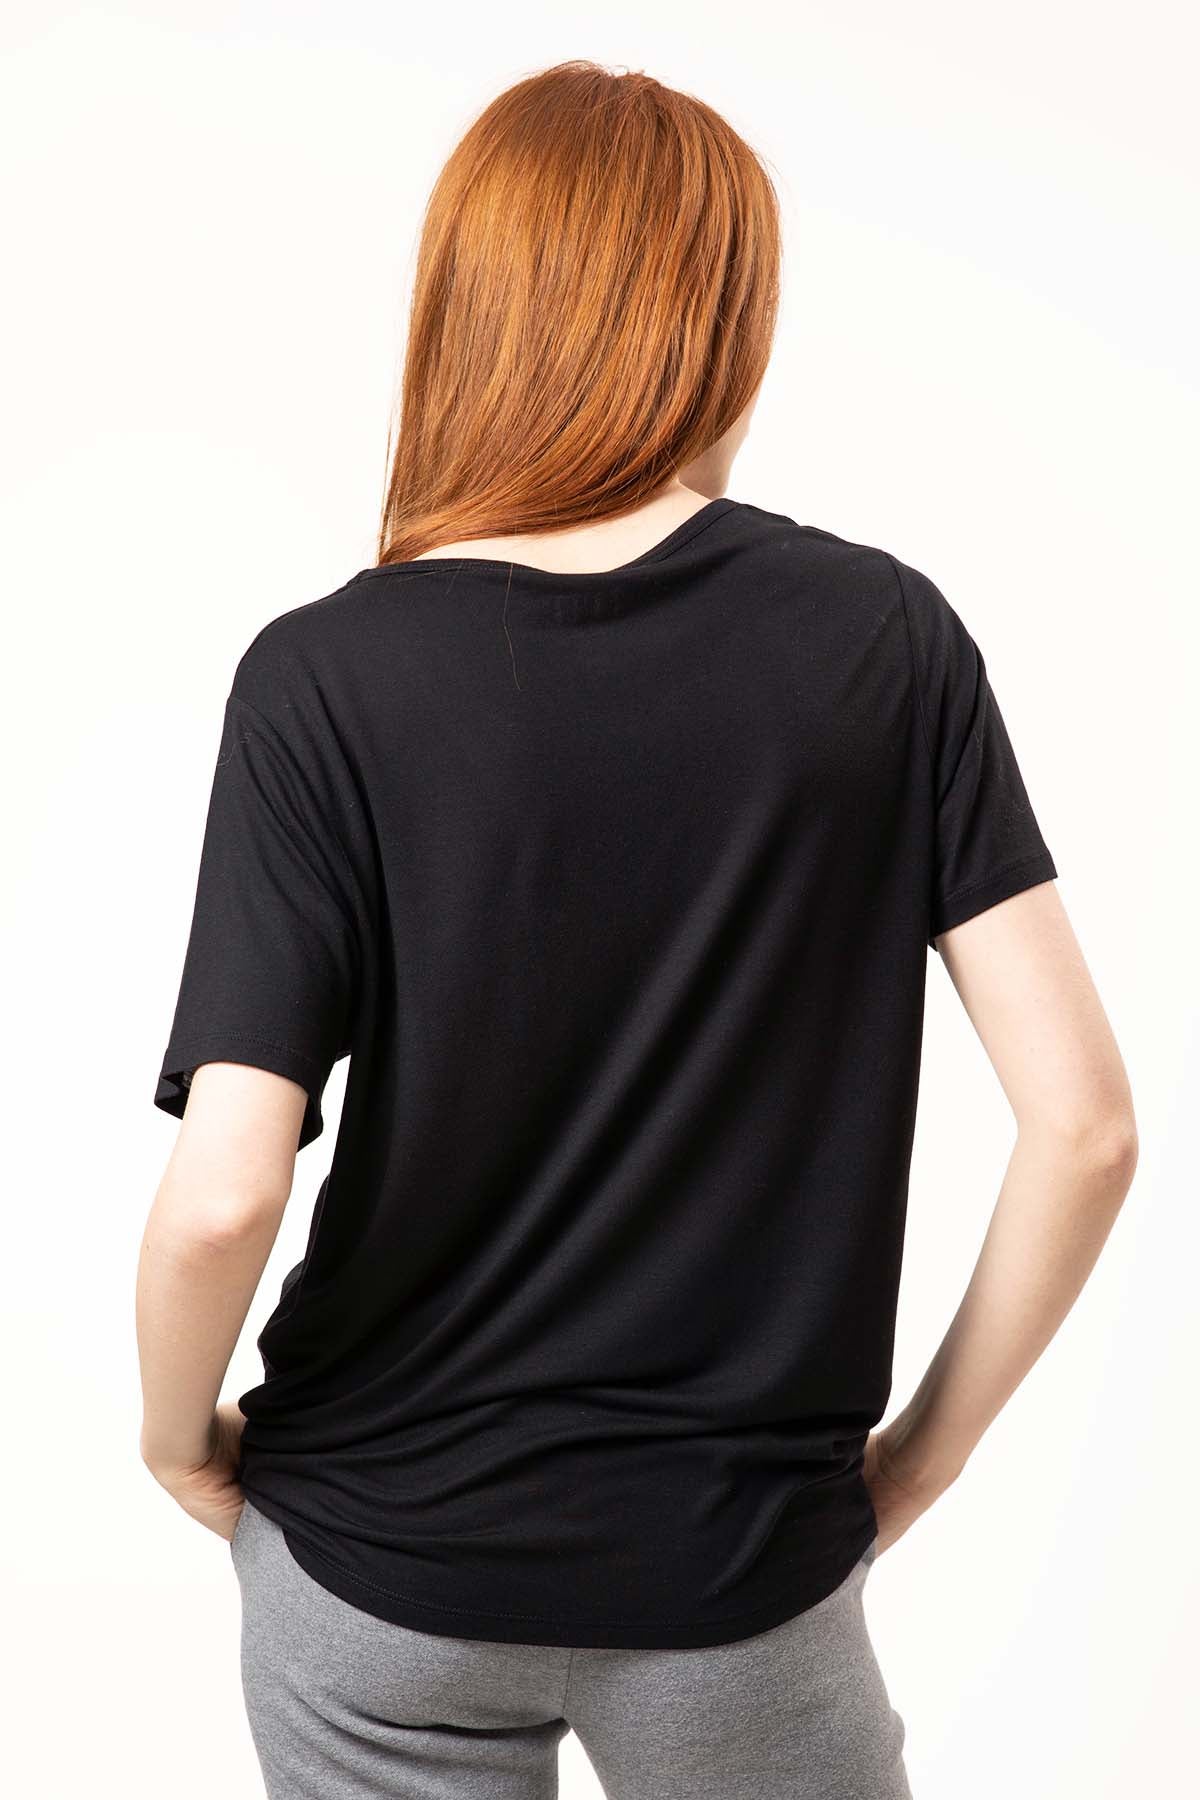 Tru Biyeli V Yaka T-shirt-Libas Trendy Fashion Store